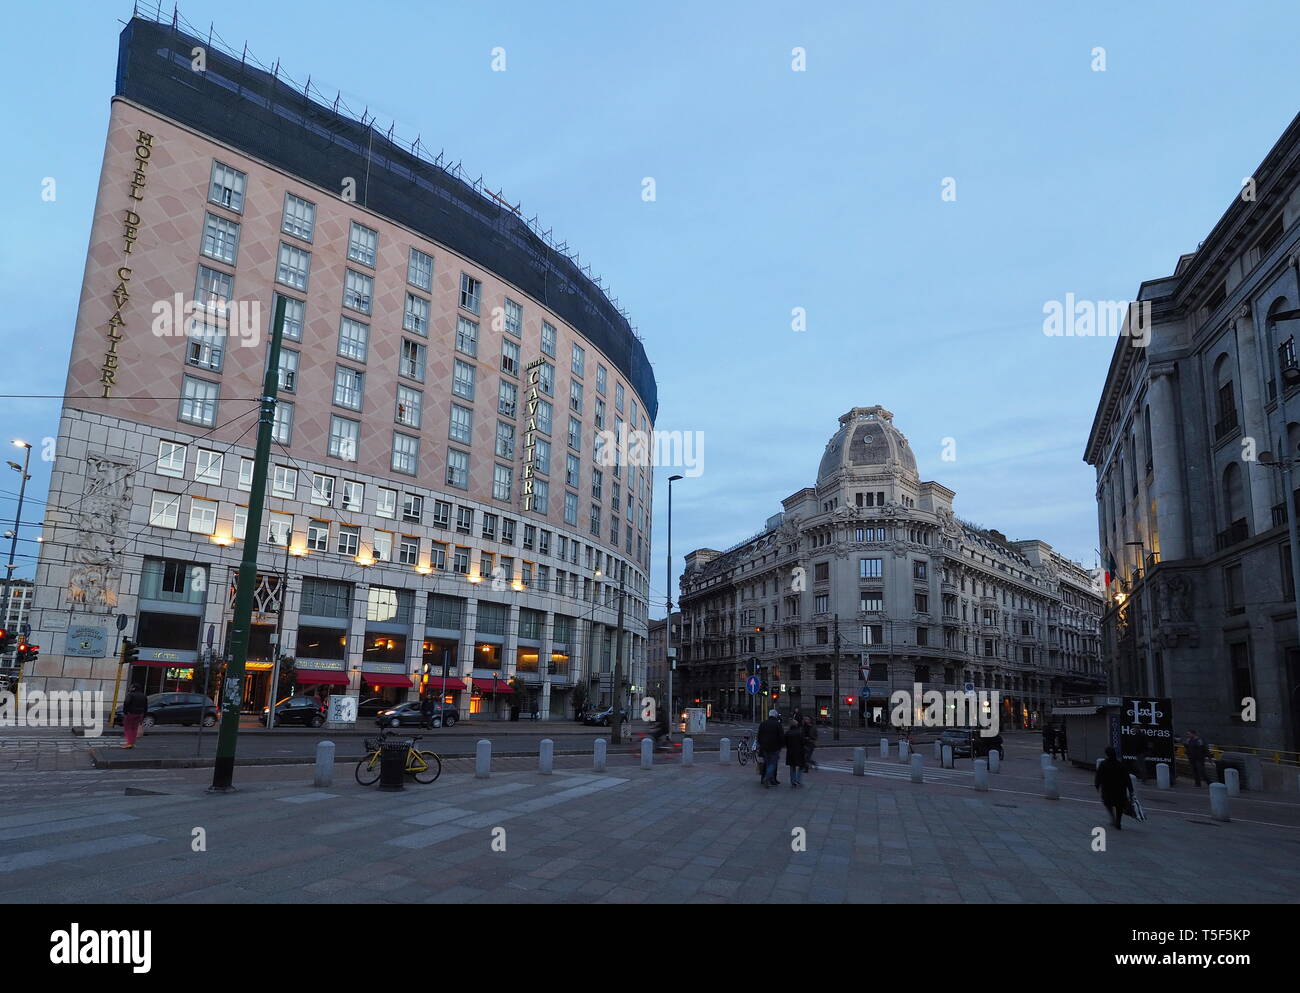 Milano, Italien: 10 Mars 2019: Blick auf die Piazza Giuseppe Missori mit Menschen in der Innenstadt von Mailand. Lombardei, Italien. Stockfoto